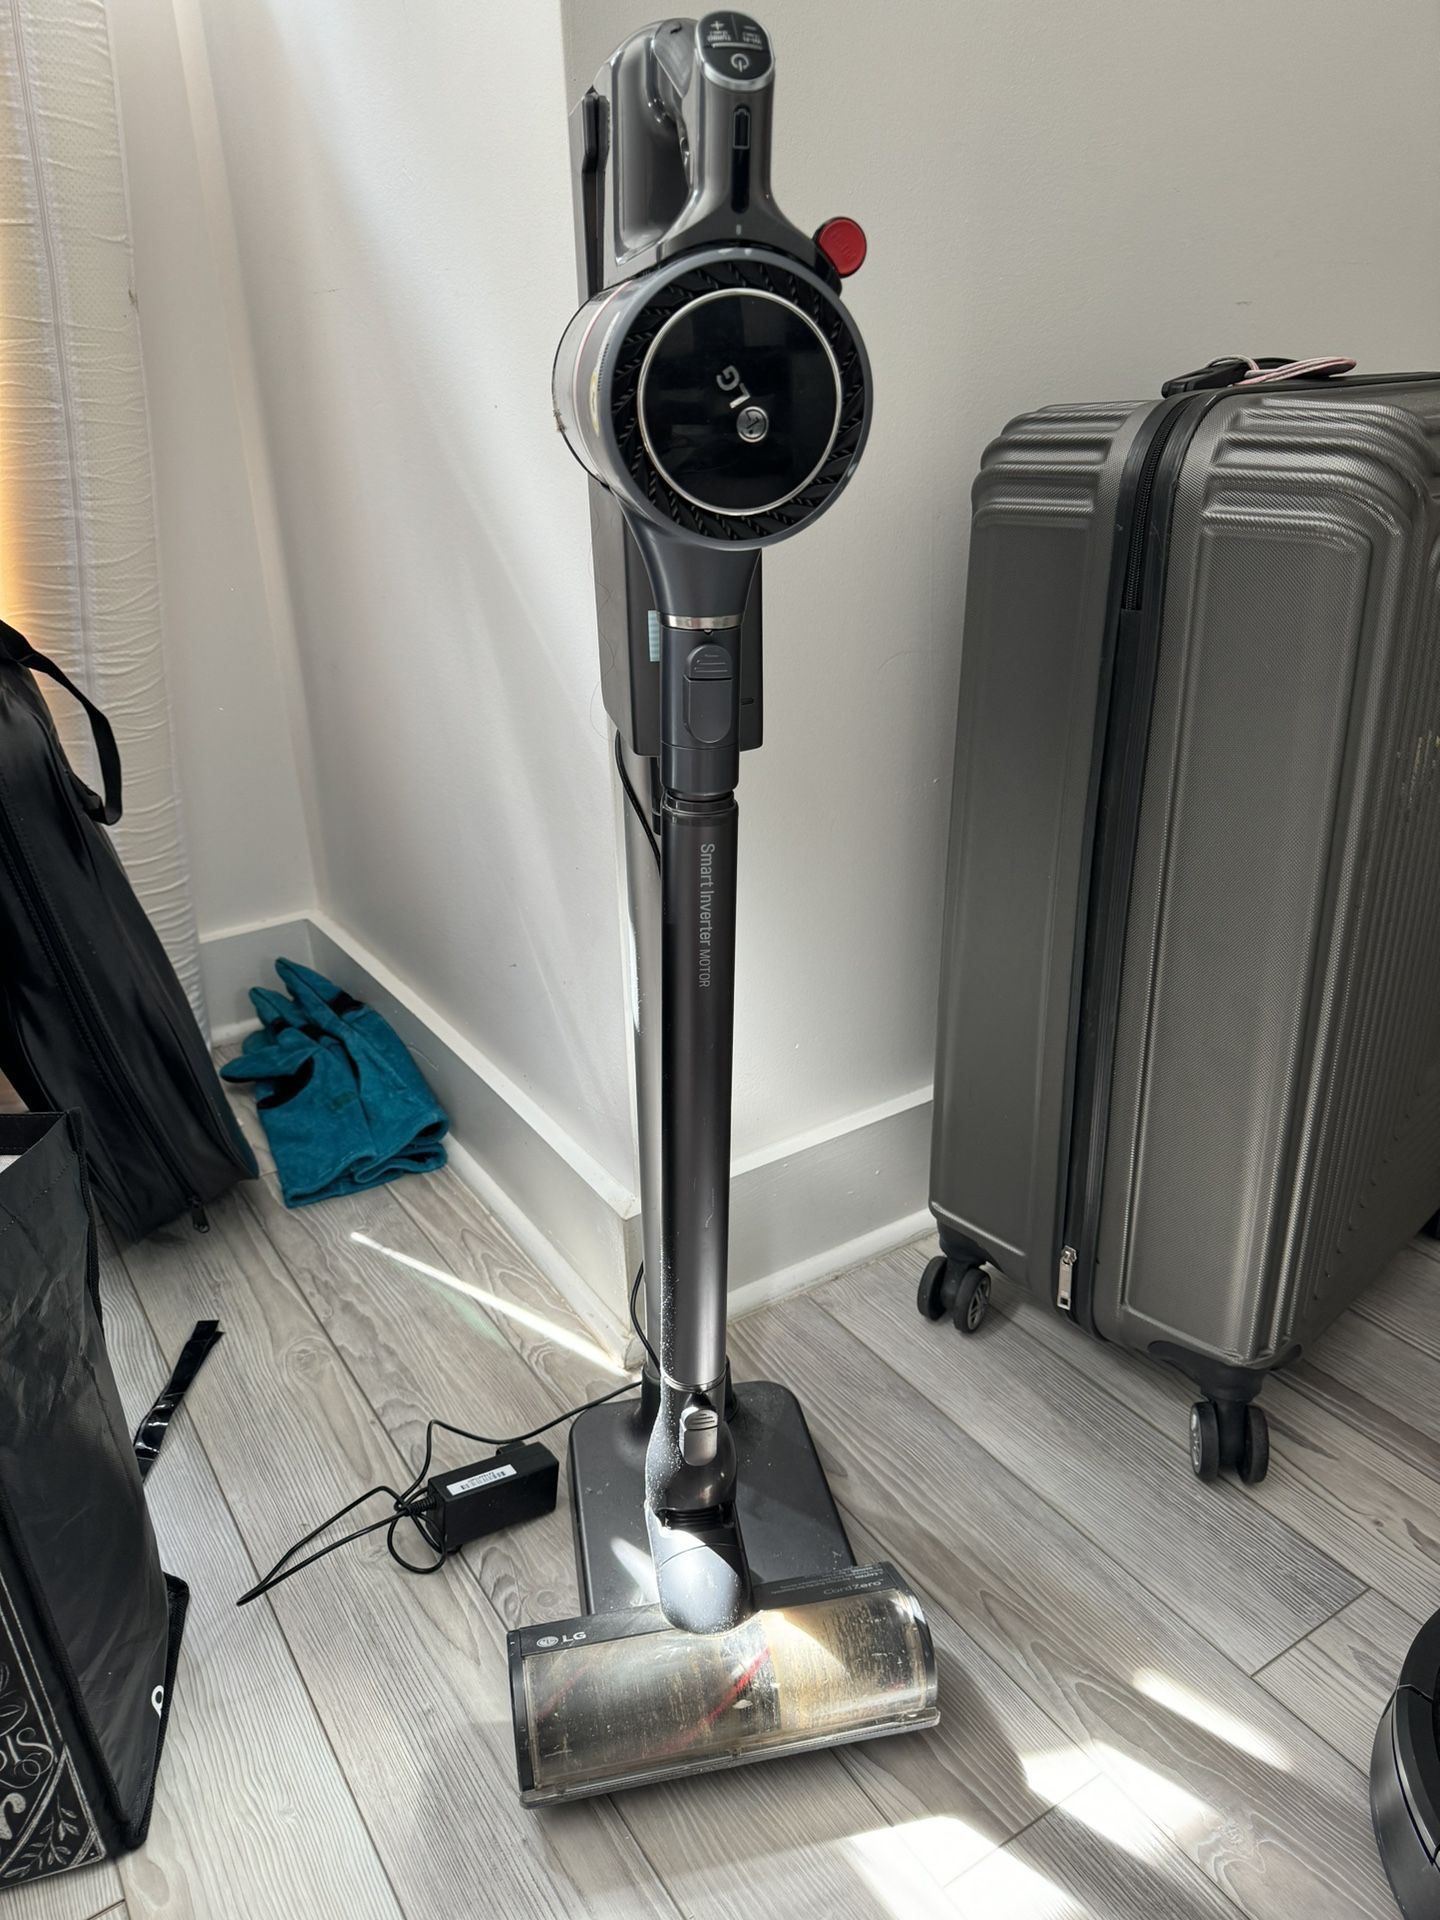 LG Cordless vacuum Cleaner 